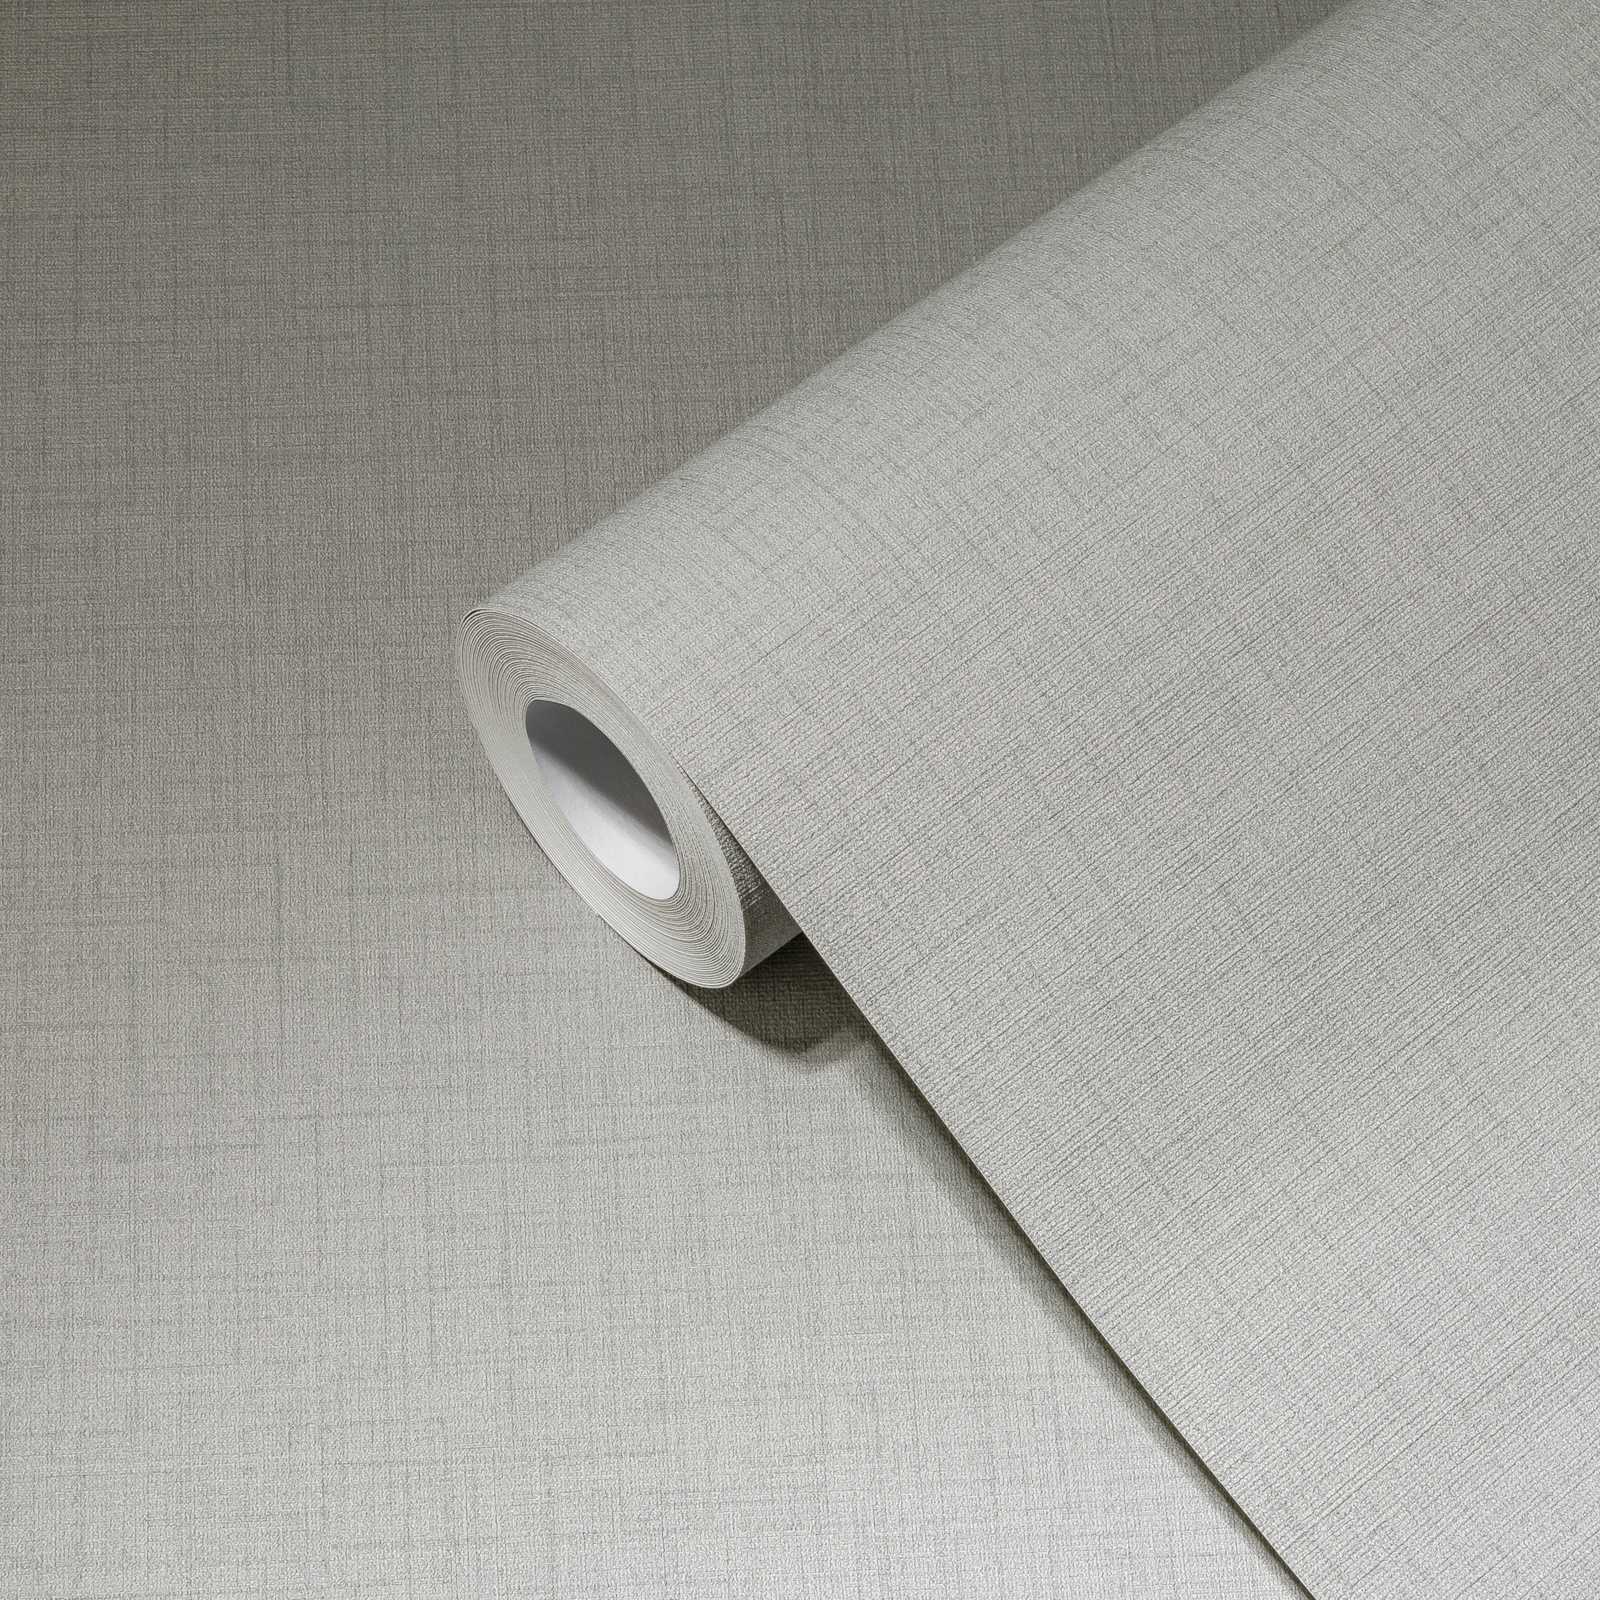             Papel pintado de aspecto de lino no tejido en color gris claro - gris
        